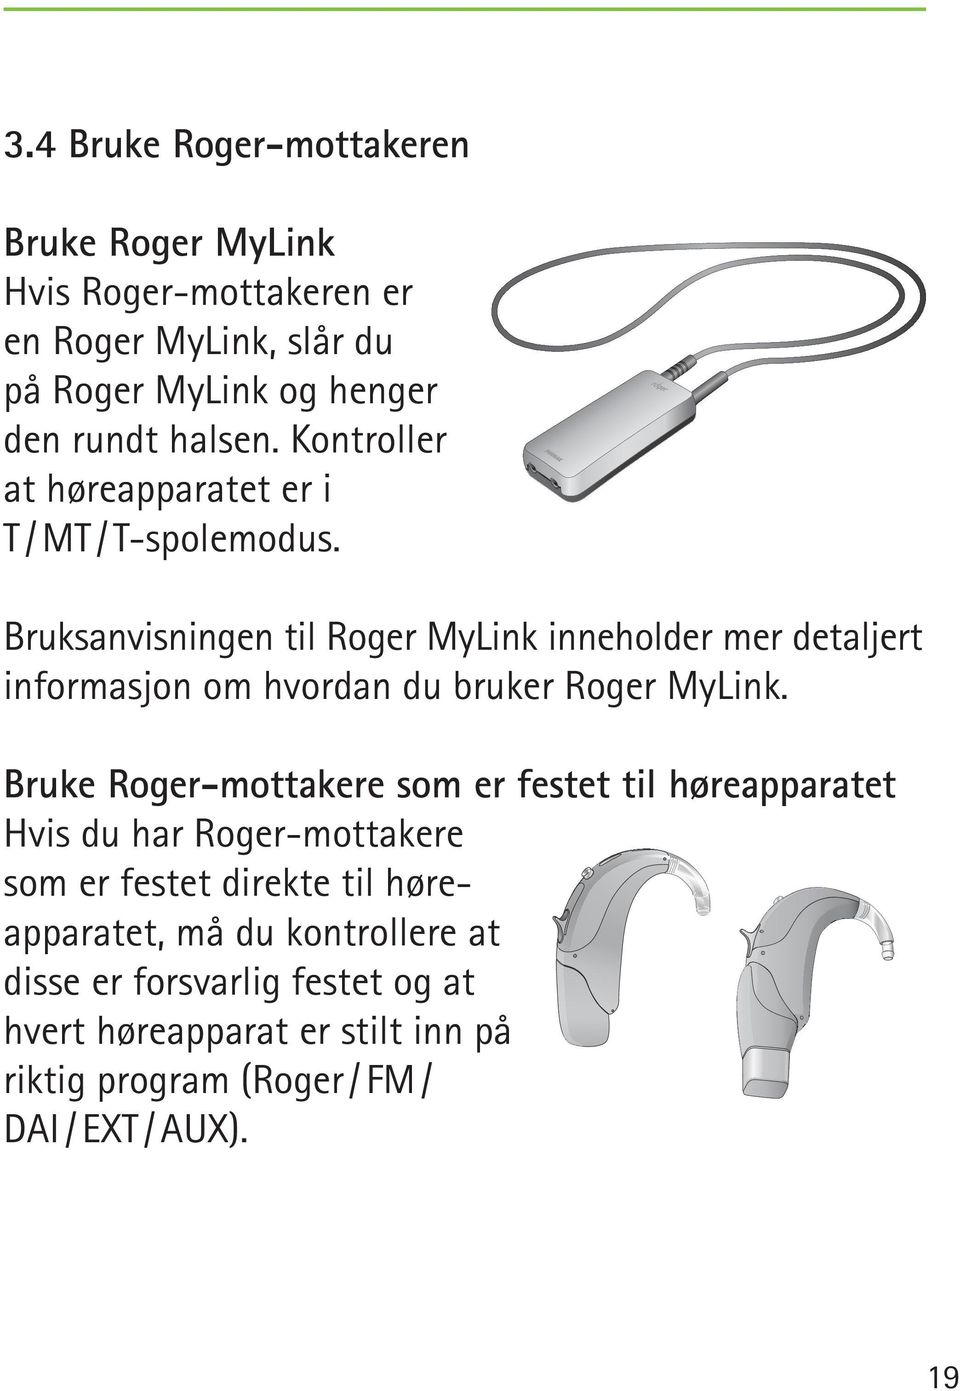 Bruksanvisningen til Roger MyLink inneholder mer detaljert informasjon om hvordan du bruker Roger MyLink.